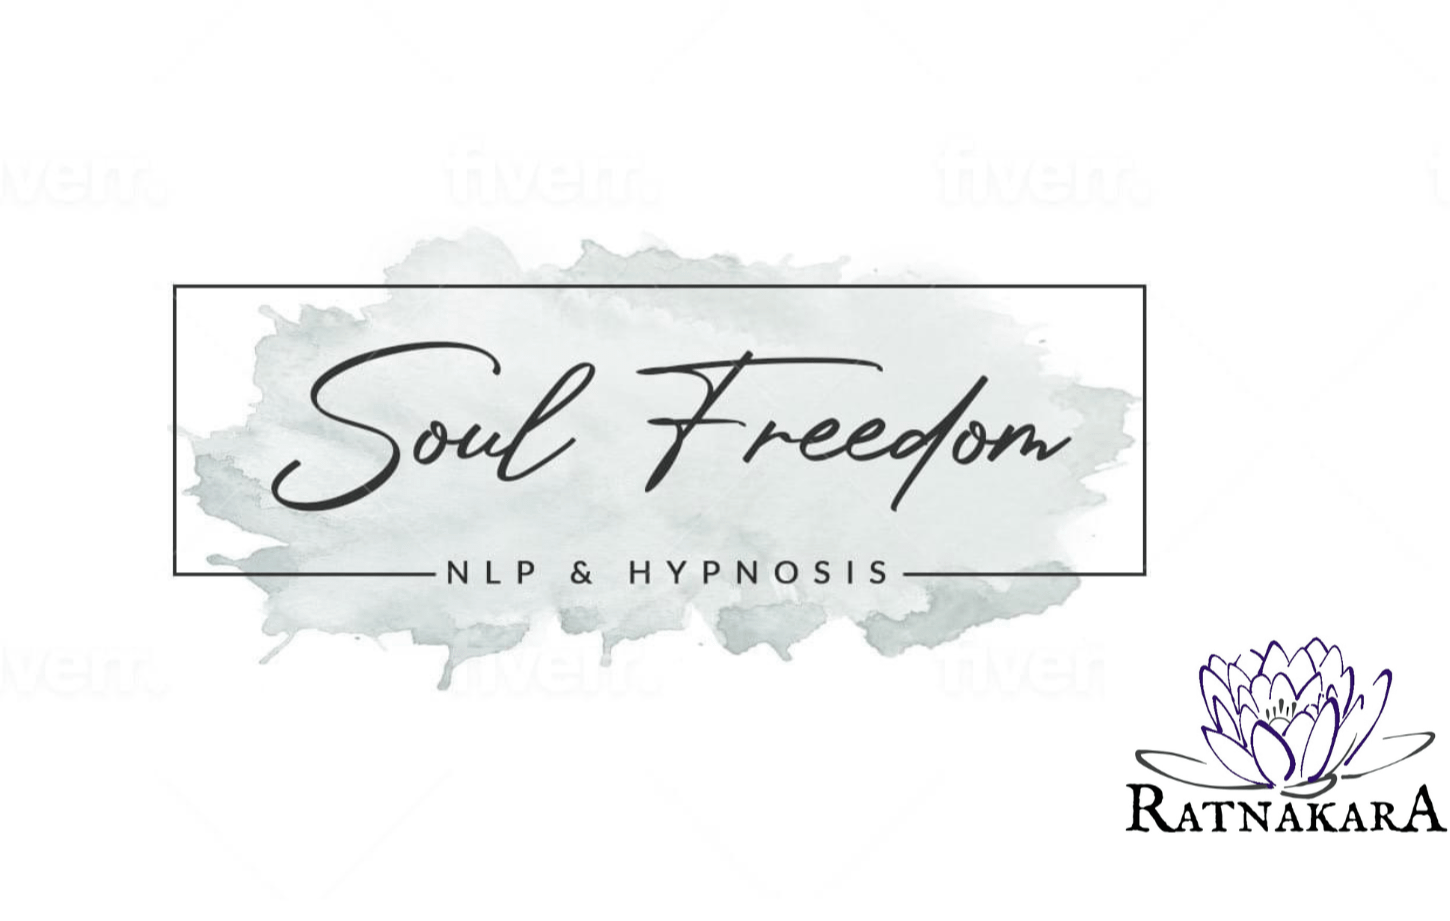 Soul Freedom NLP & Hypnosis